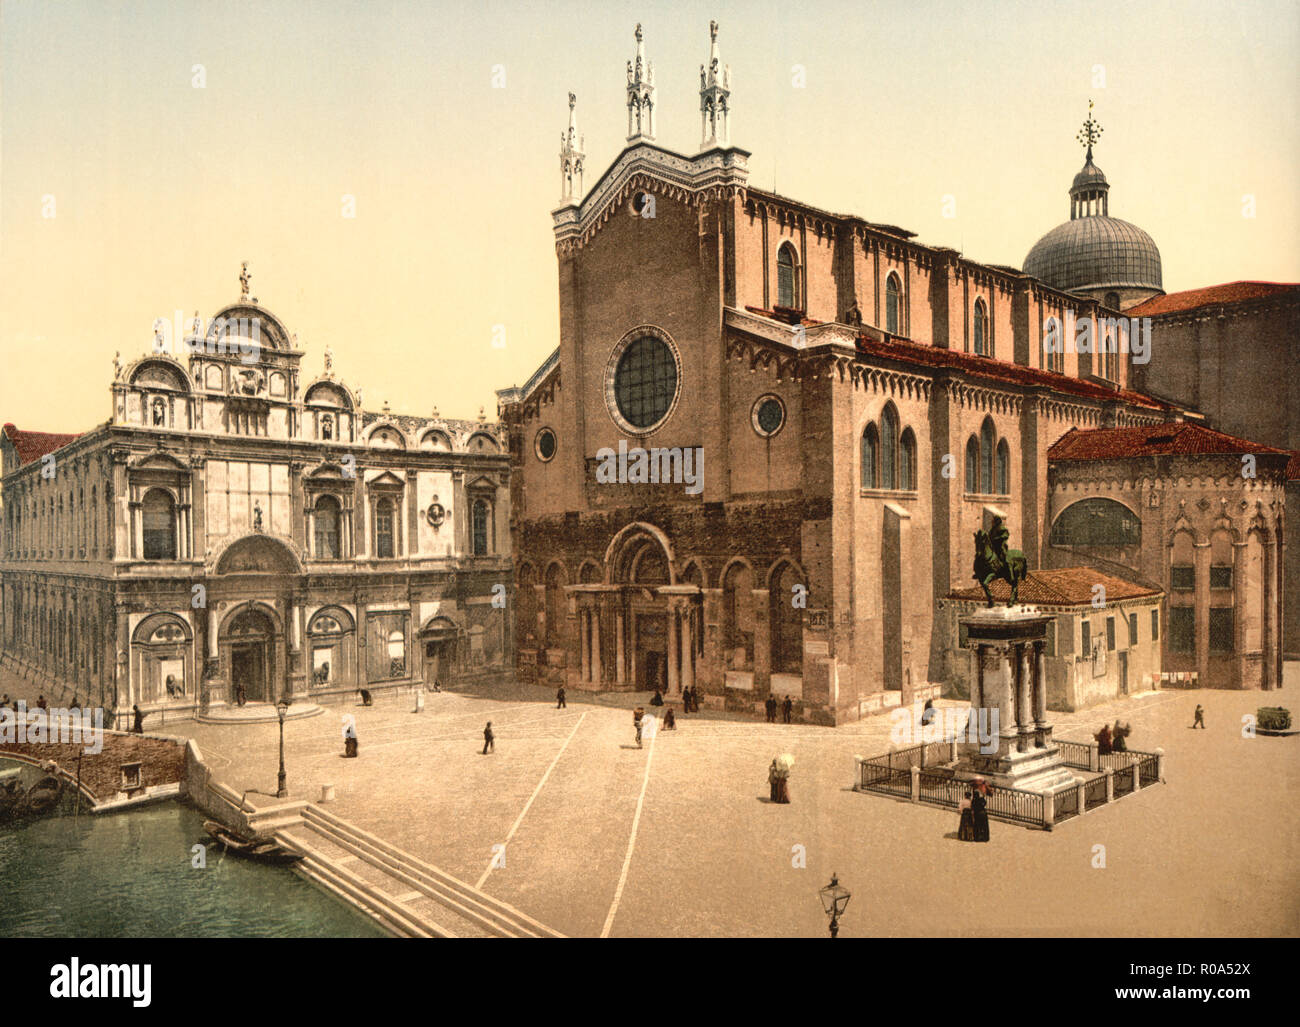 Saint Jean et Saint Paul Church, Venise, Italie, impression Photochrome, Detroit Publishing Company, 1900 Banque D'Images